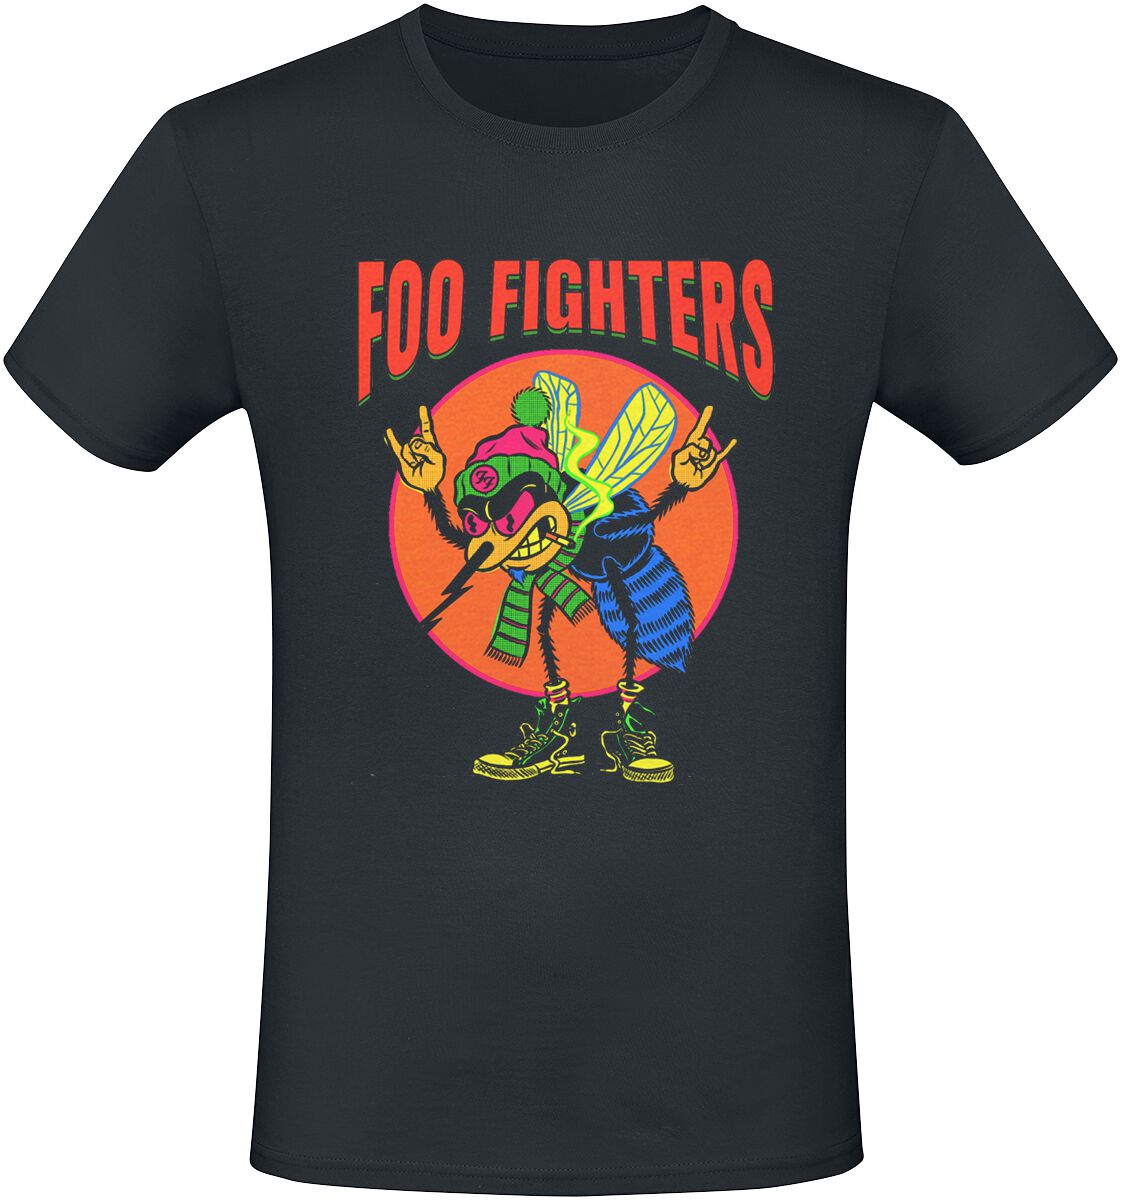 Foo Fighters T-Shirt - Mosquito - S bis 3XL - für Männer - Größe 3XL - schwarz  - Lizenziertes Merchandise!